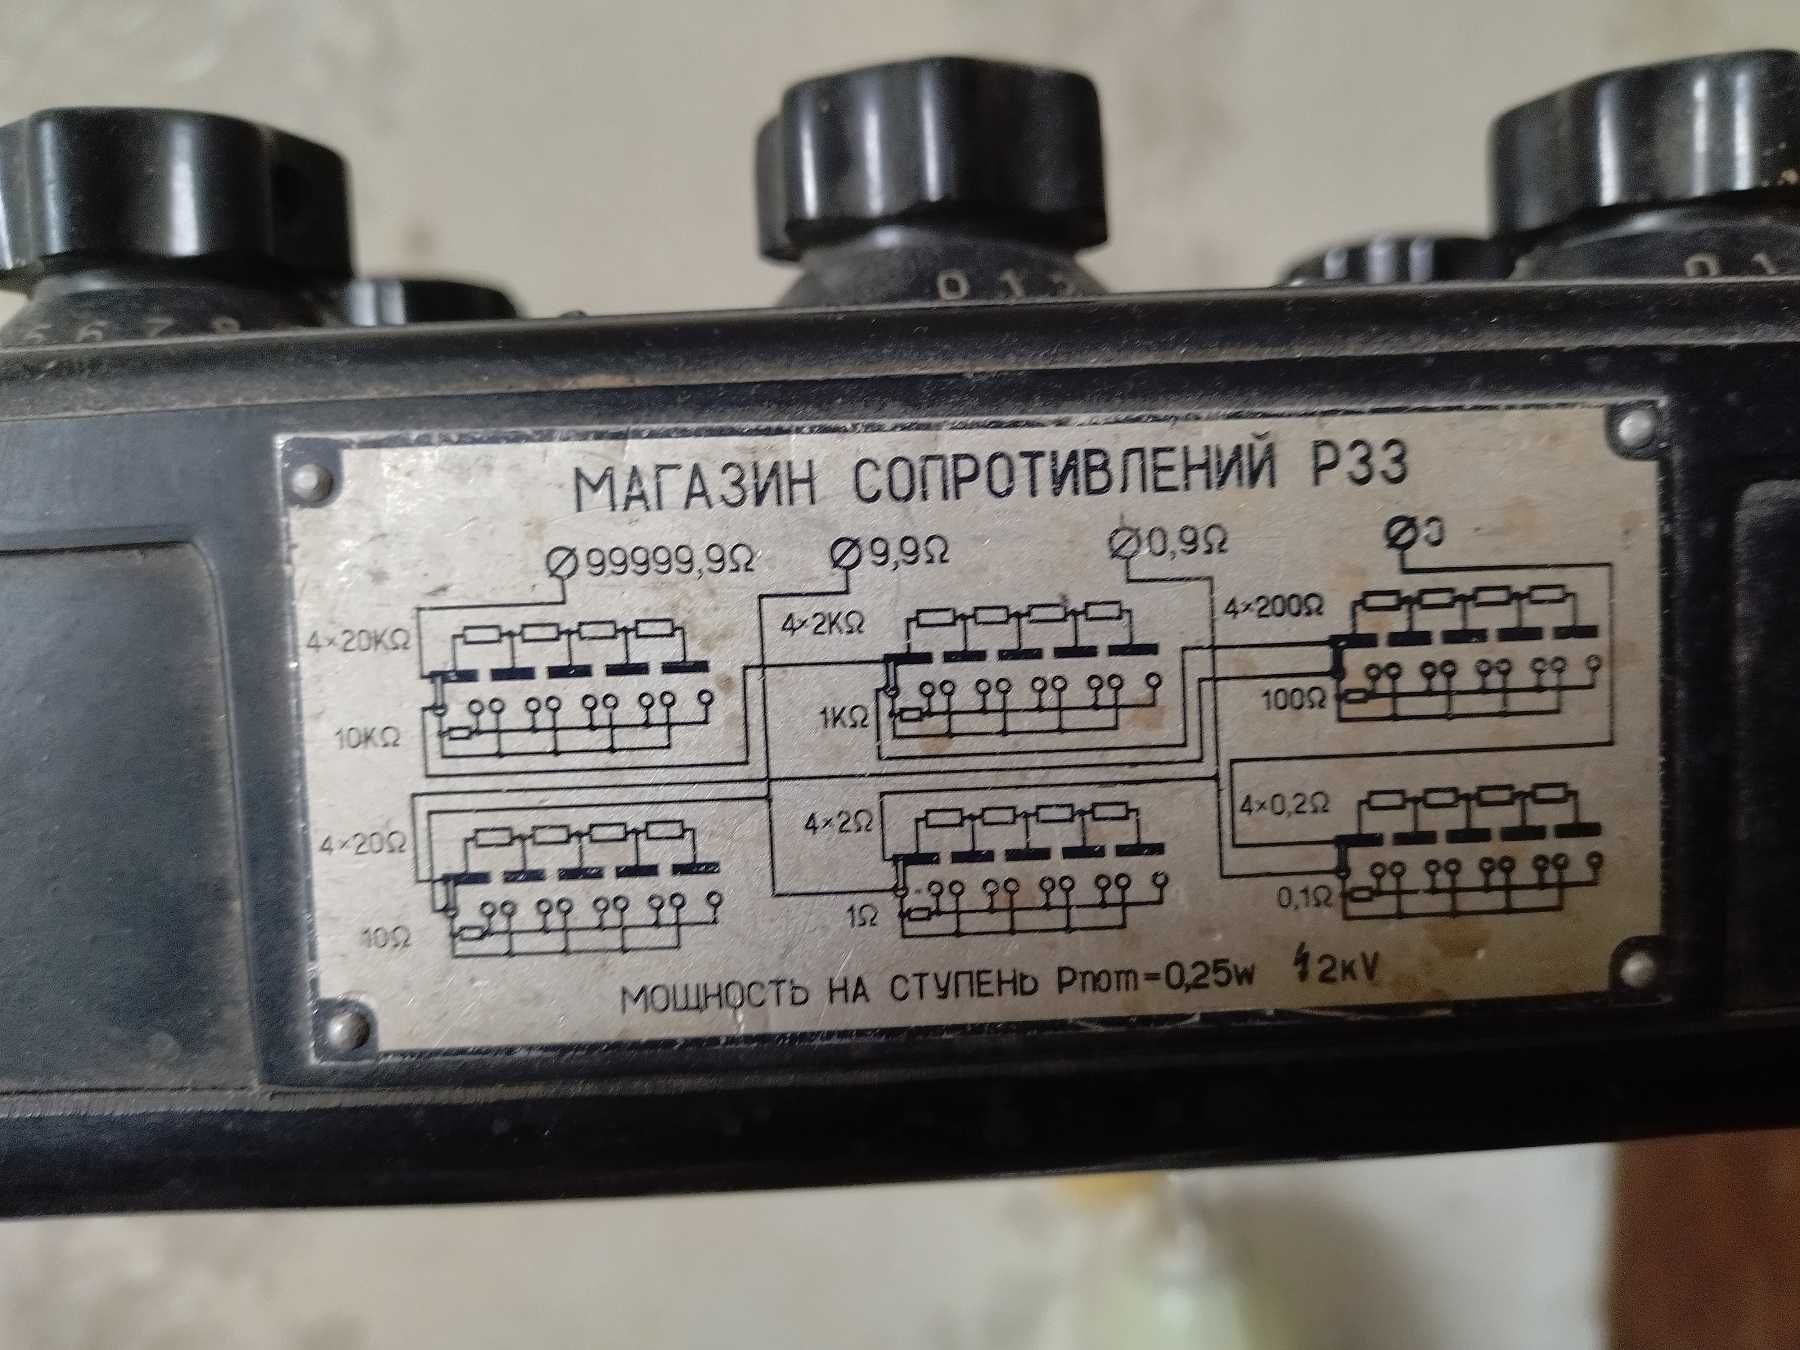 Магазин сопротивлений Р33 1962 года выпуска (времен СССР)